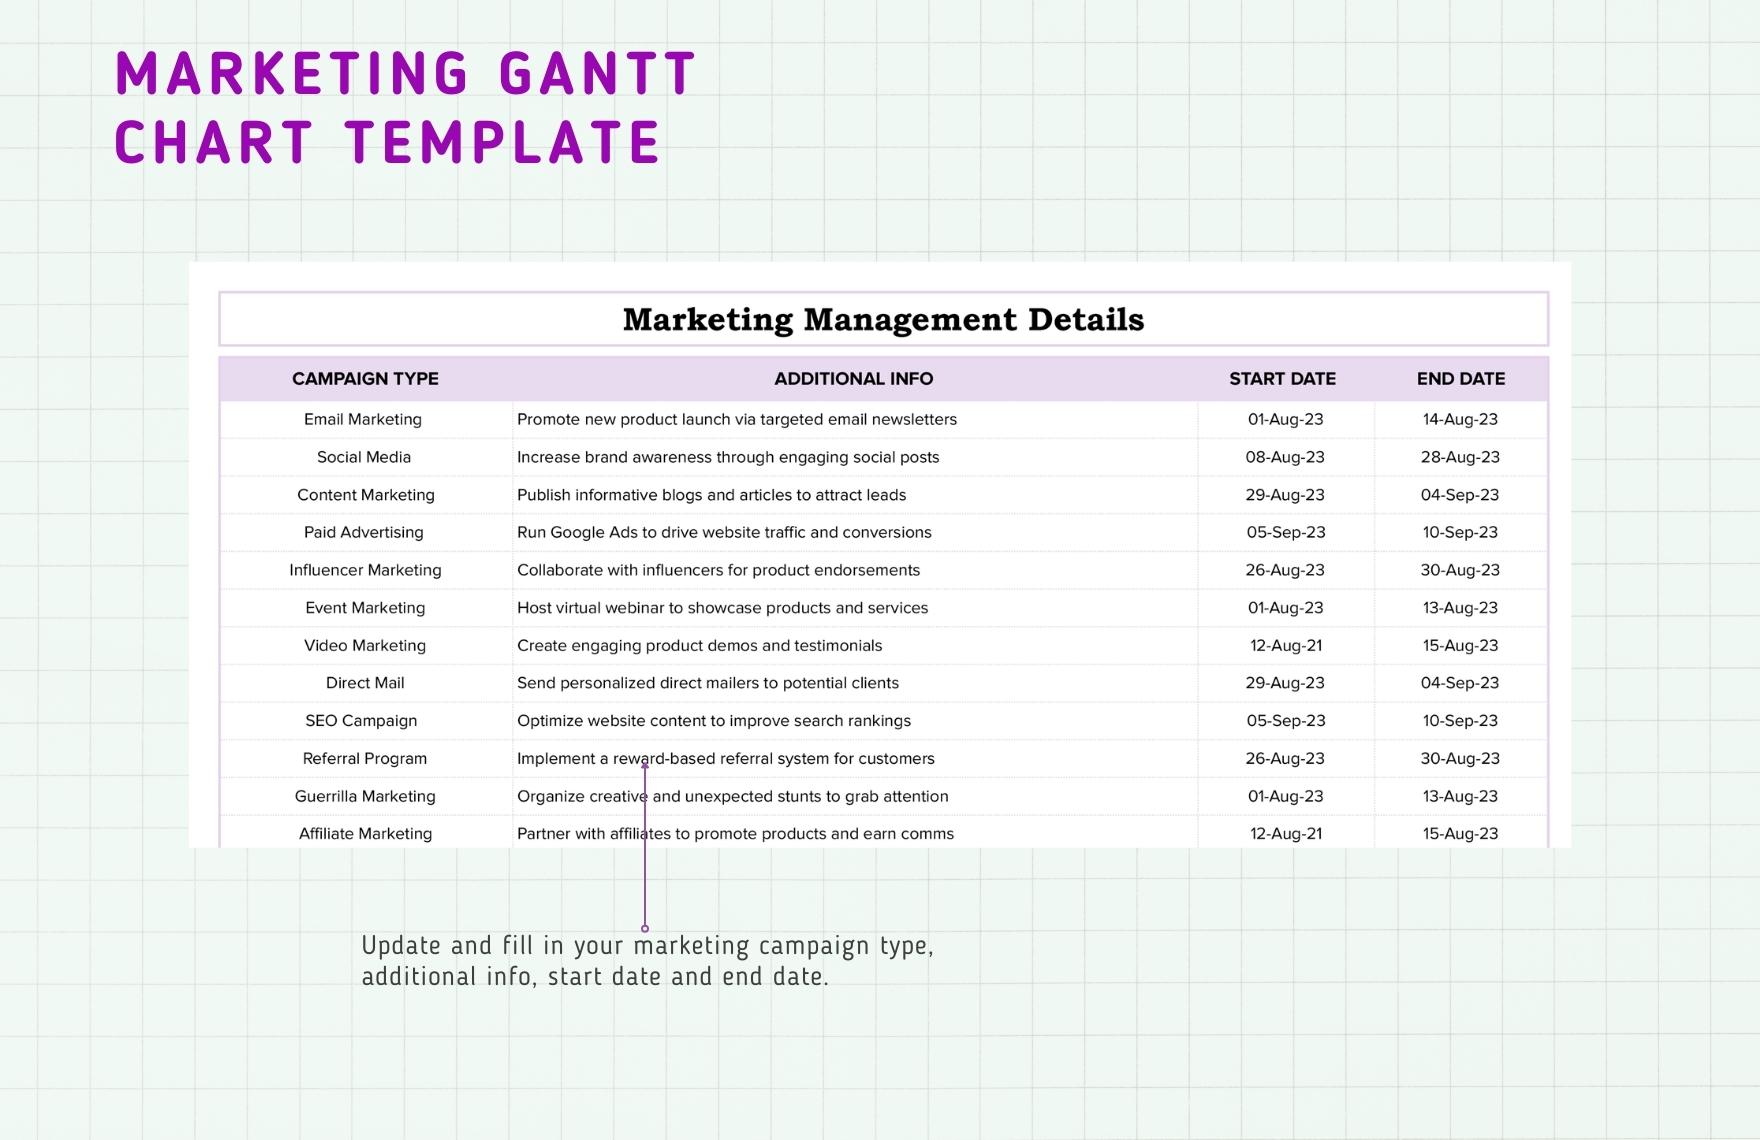 Marketing Gantt Chart Template